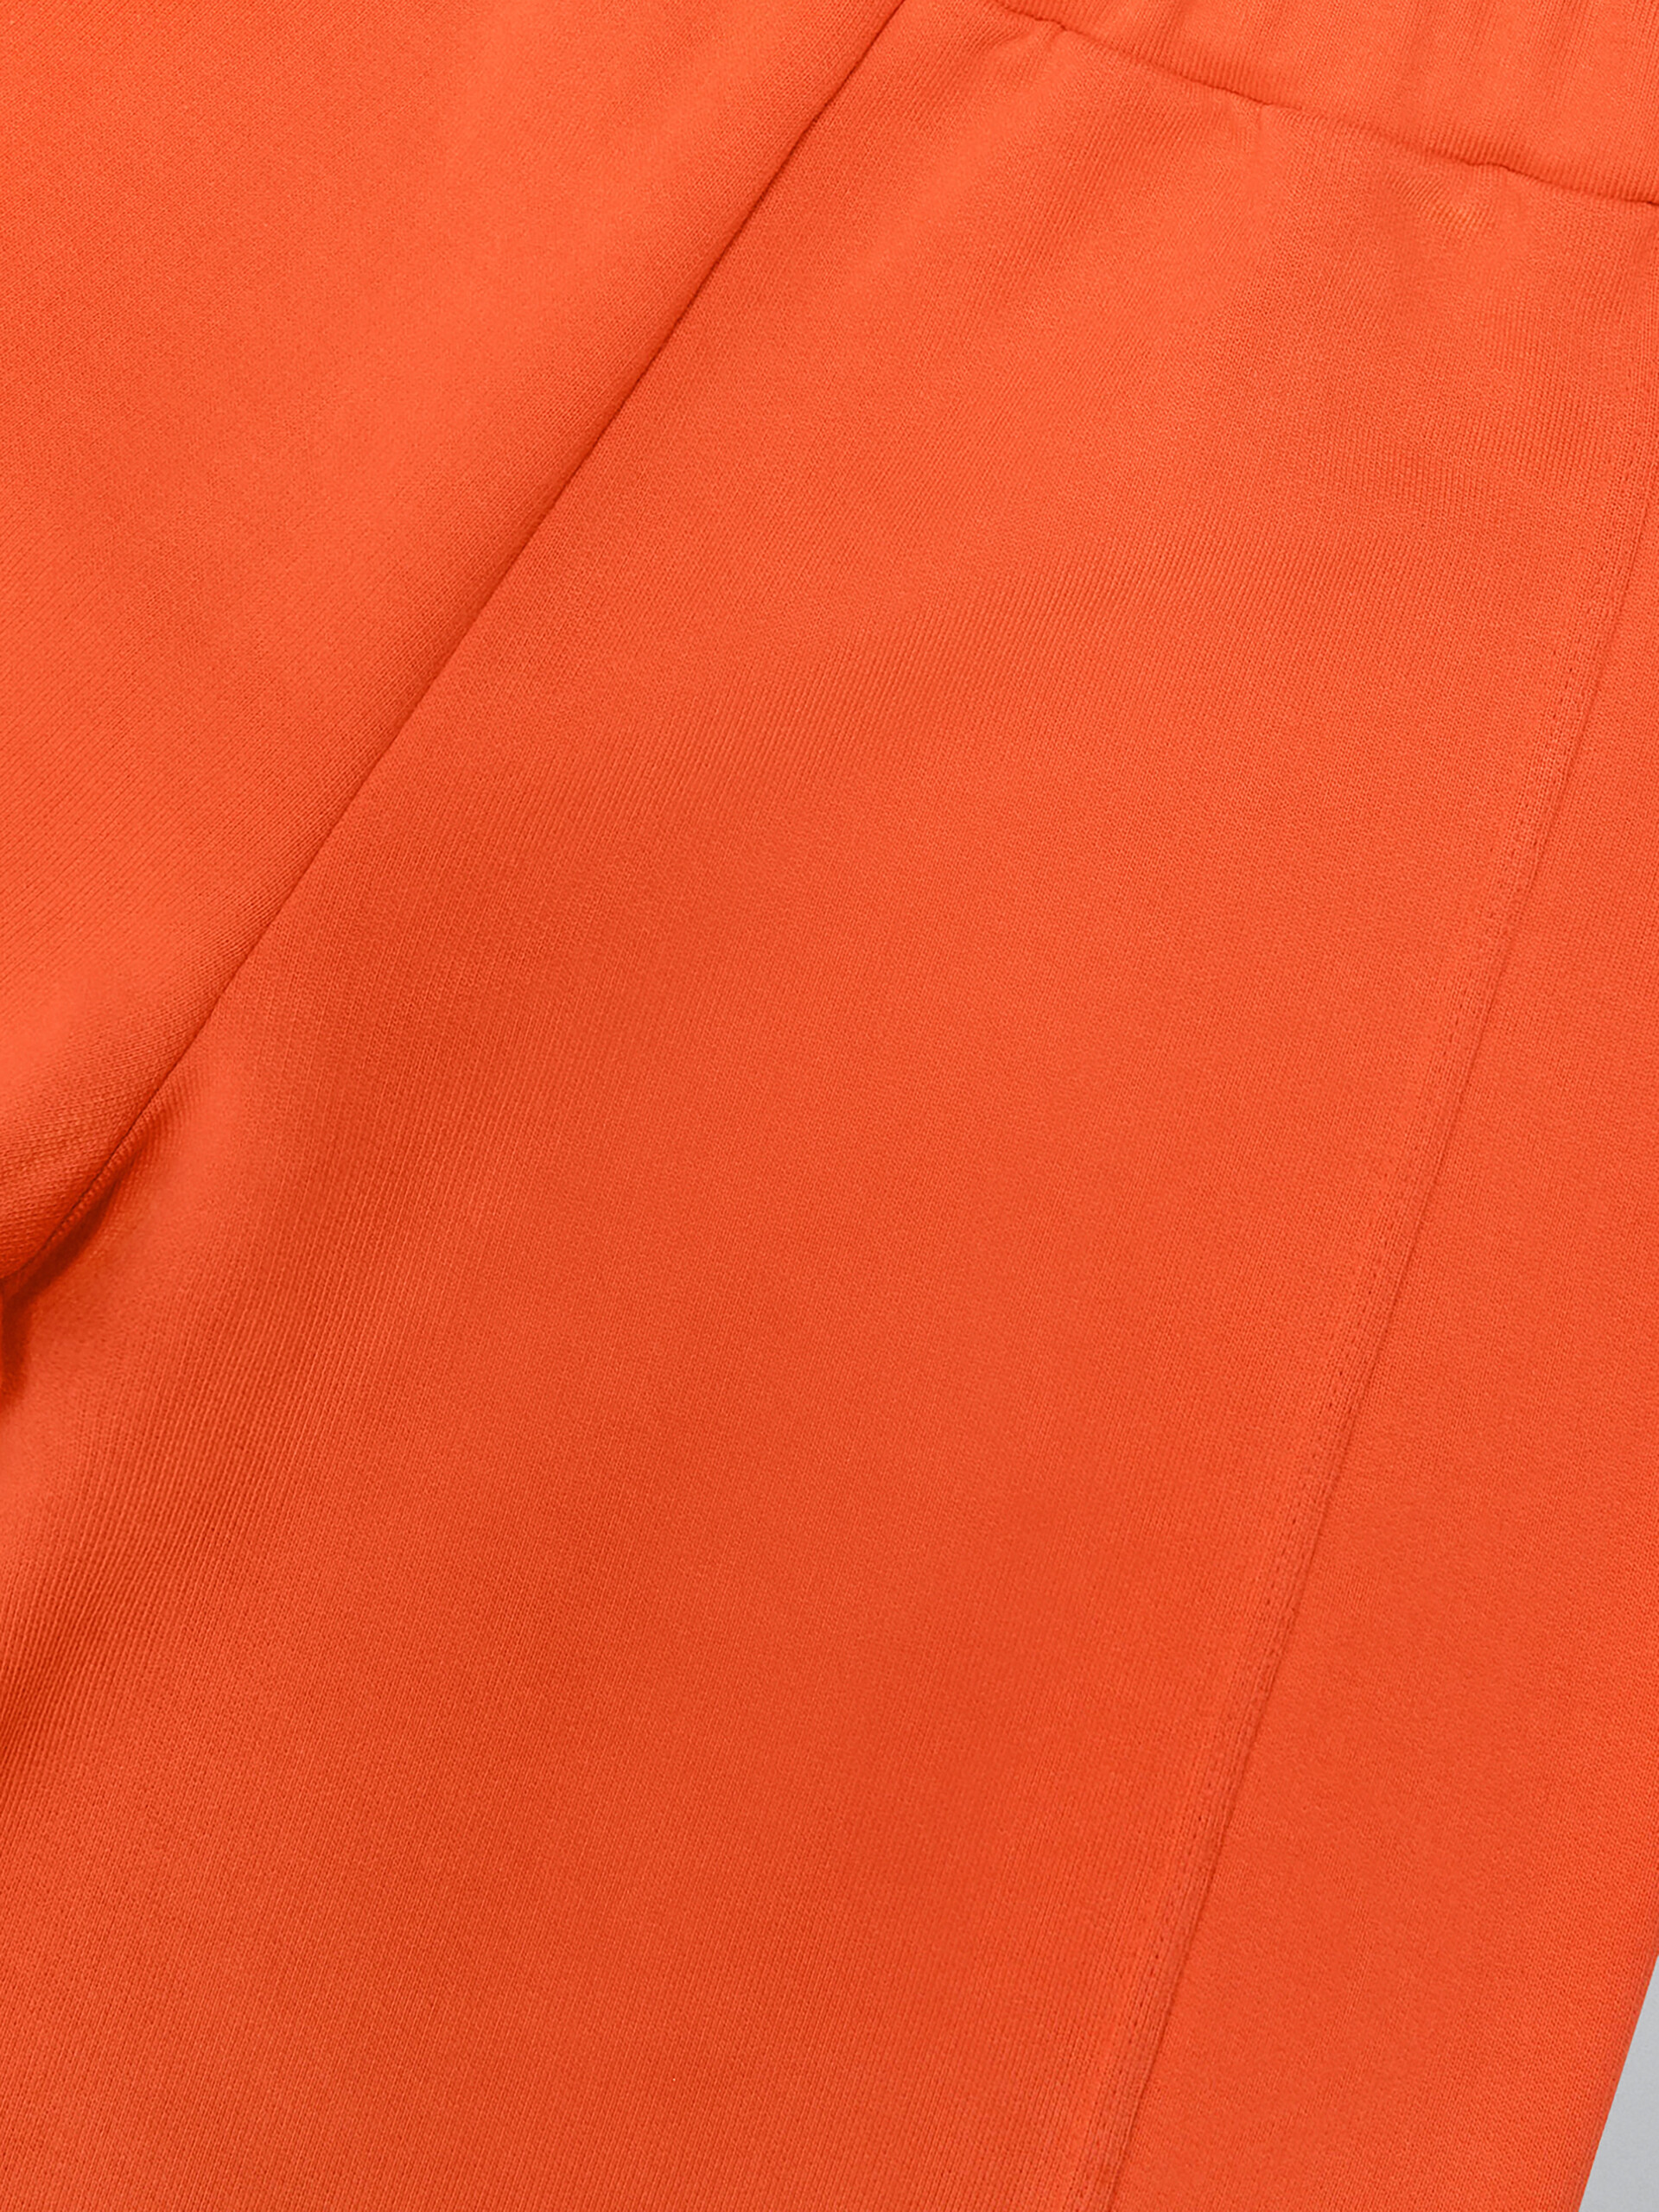 Orange fleece shorts with Brush logo - Pants - Image 4